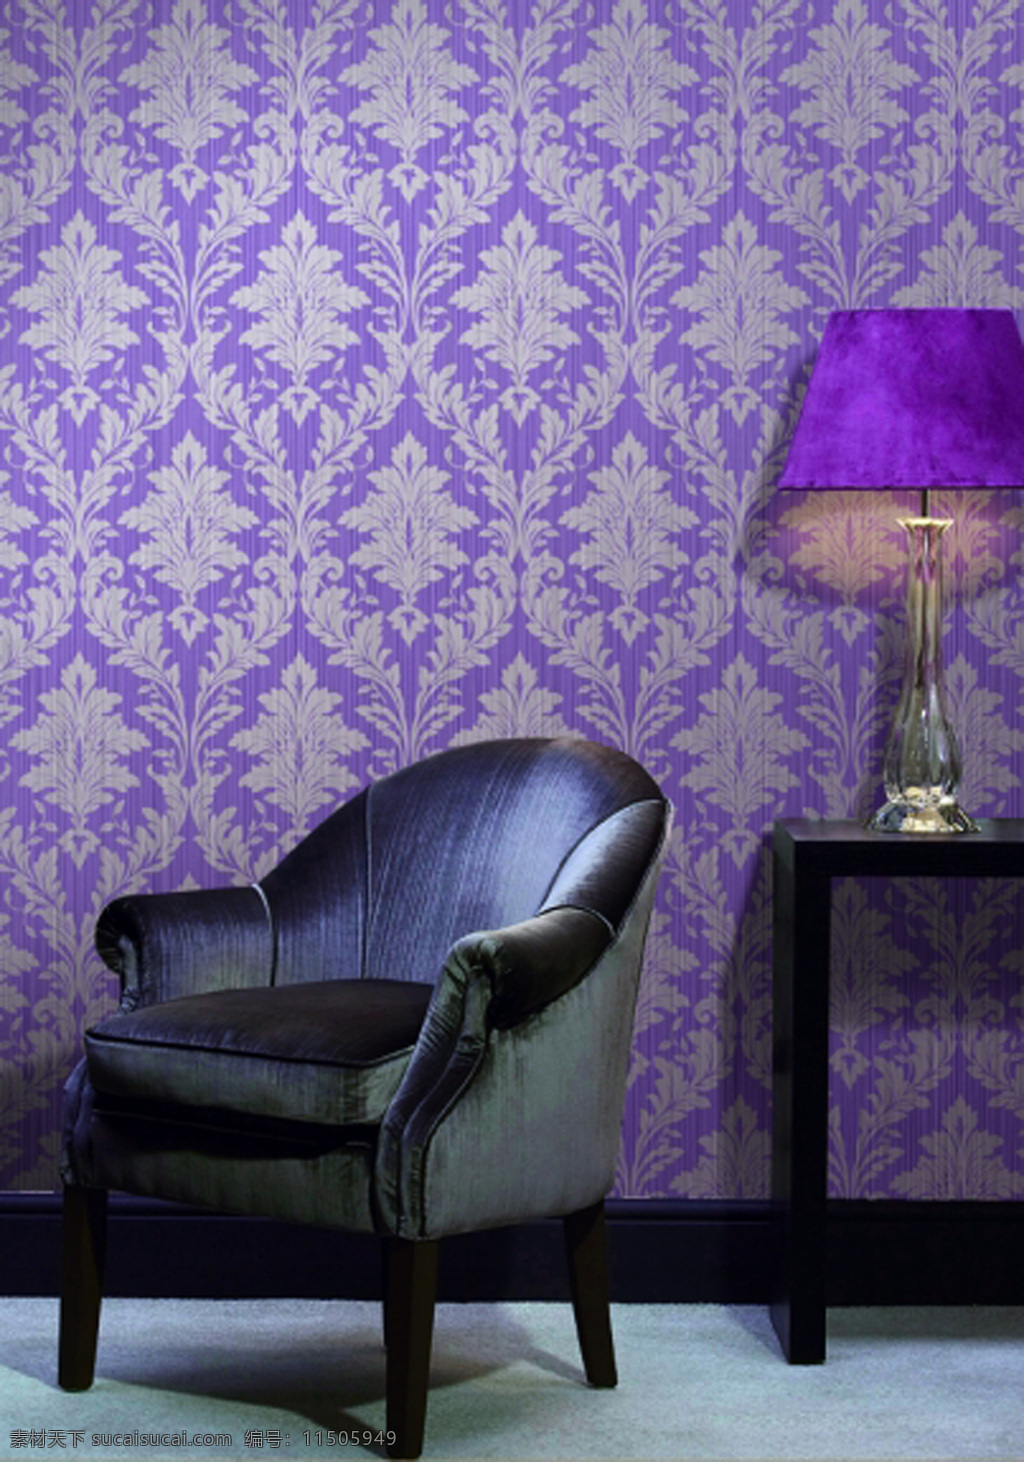 墙纸 背景墙 高贵 花型 环境设计 欧式 沙发 台灯 紫色 室内设计 装饰素材